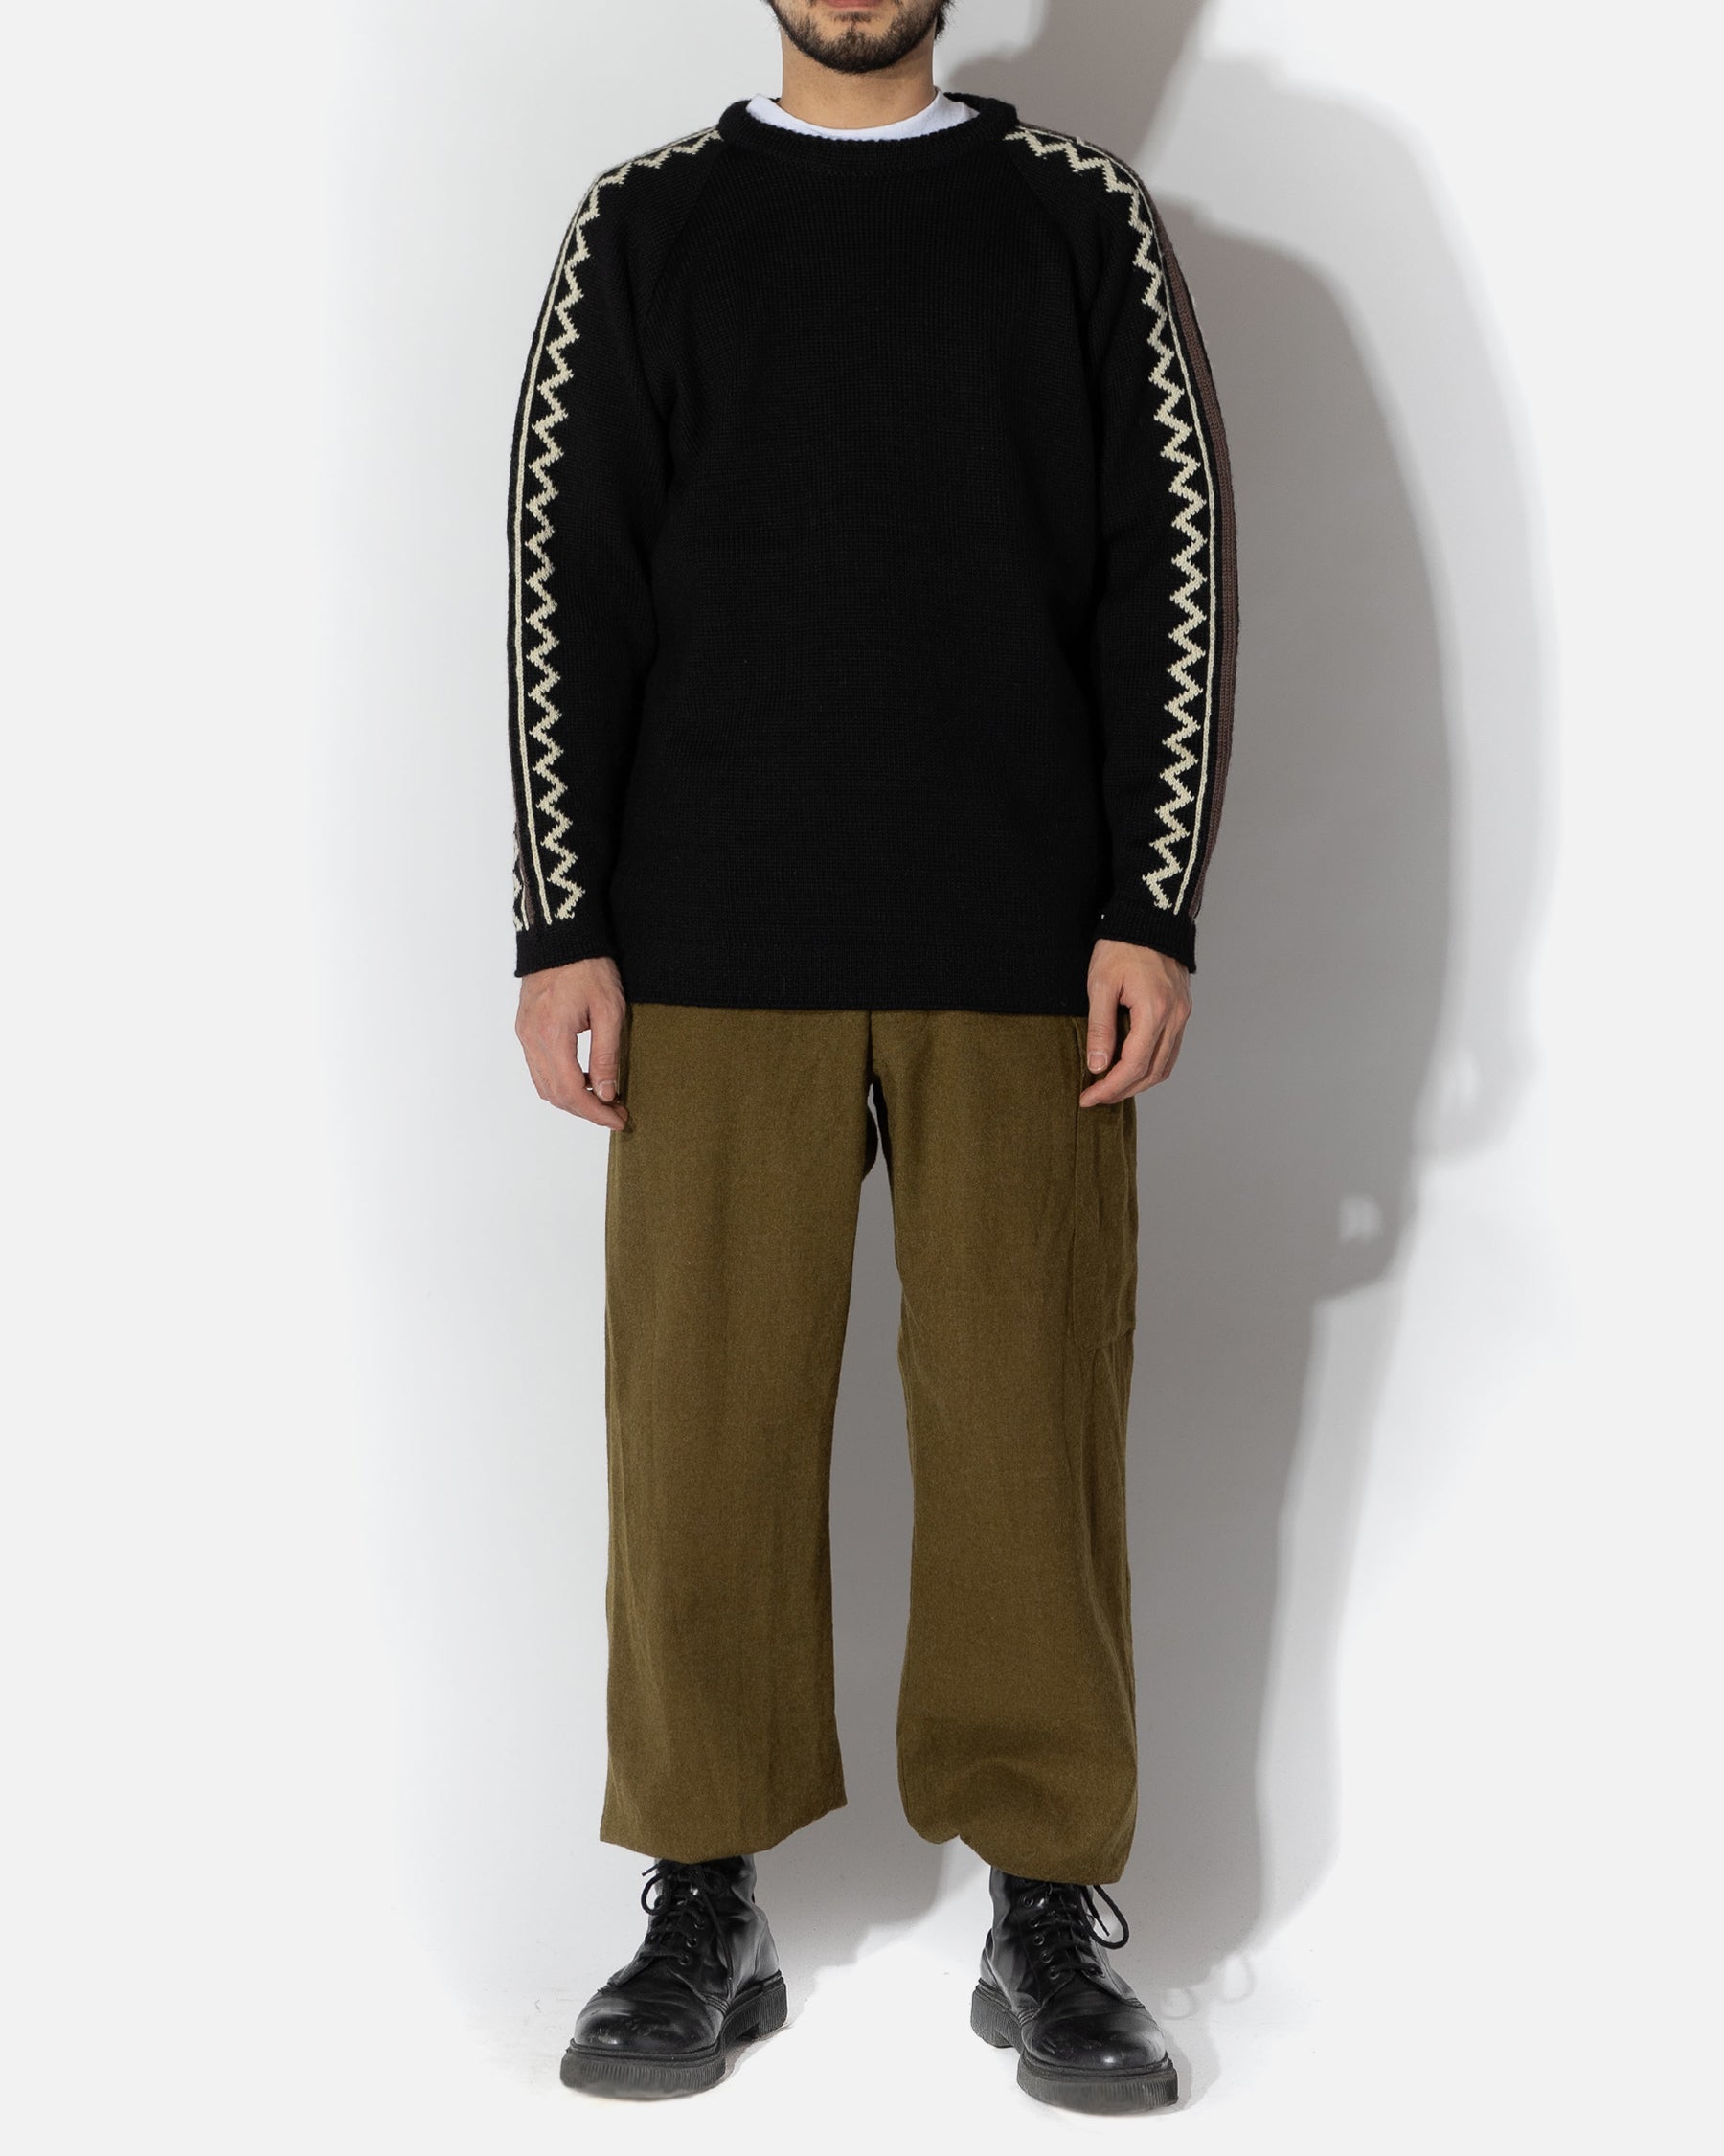 Weave Pattern Sweater